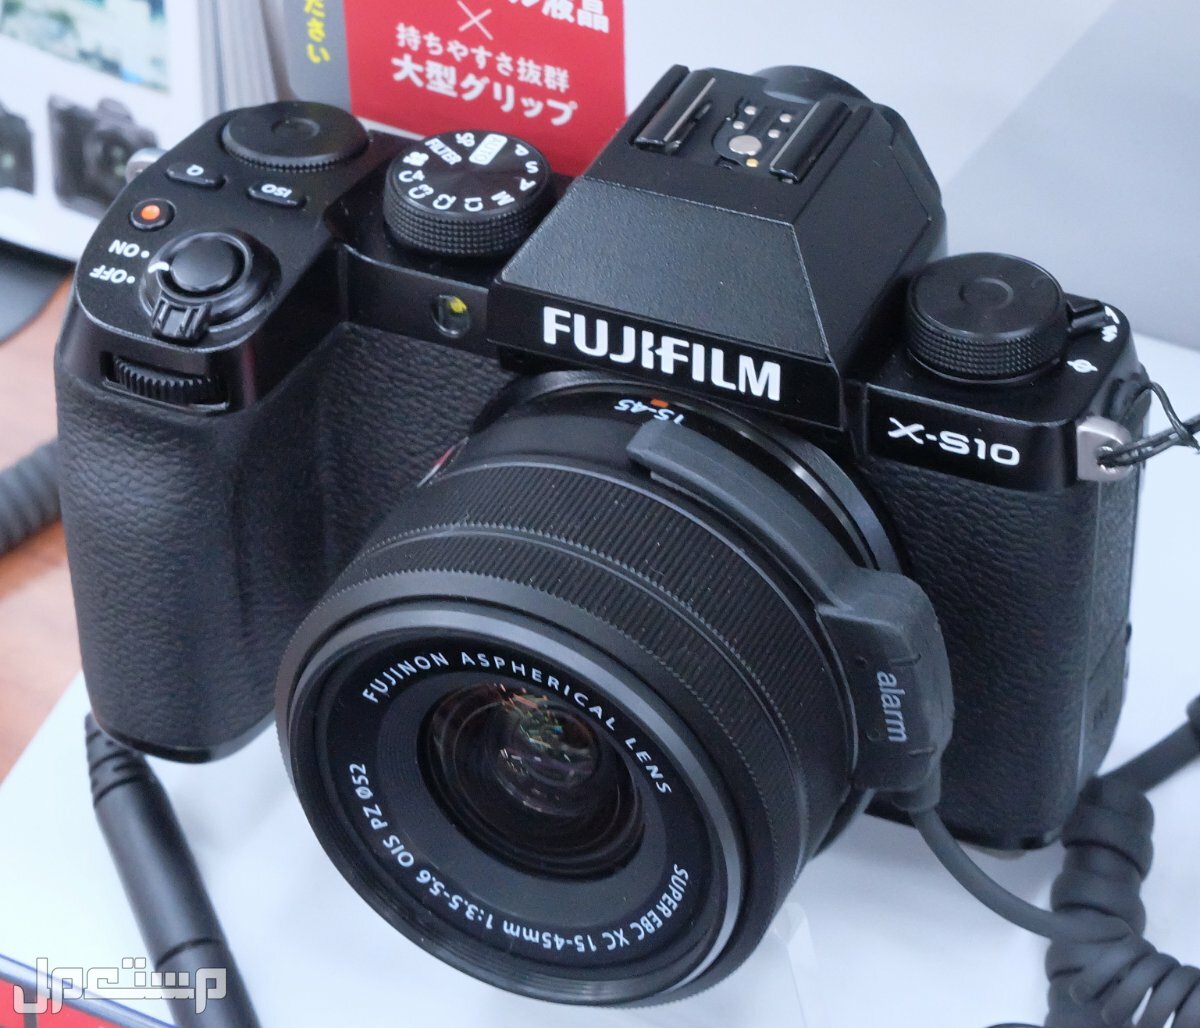 مواصفات ومميزات وعيوب كاميرات التصوير فوجي فيلم في موريتانيا مواصفات كاميرا Fujifilm X-S10